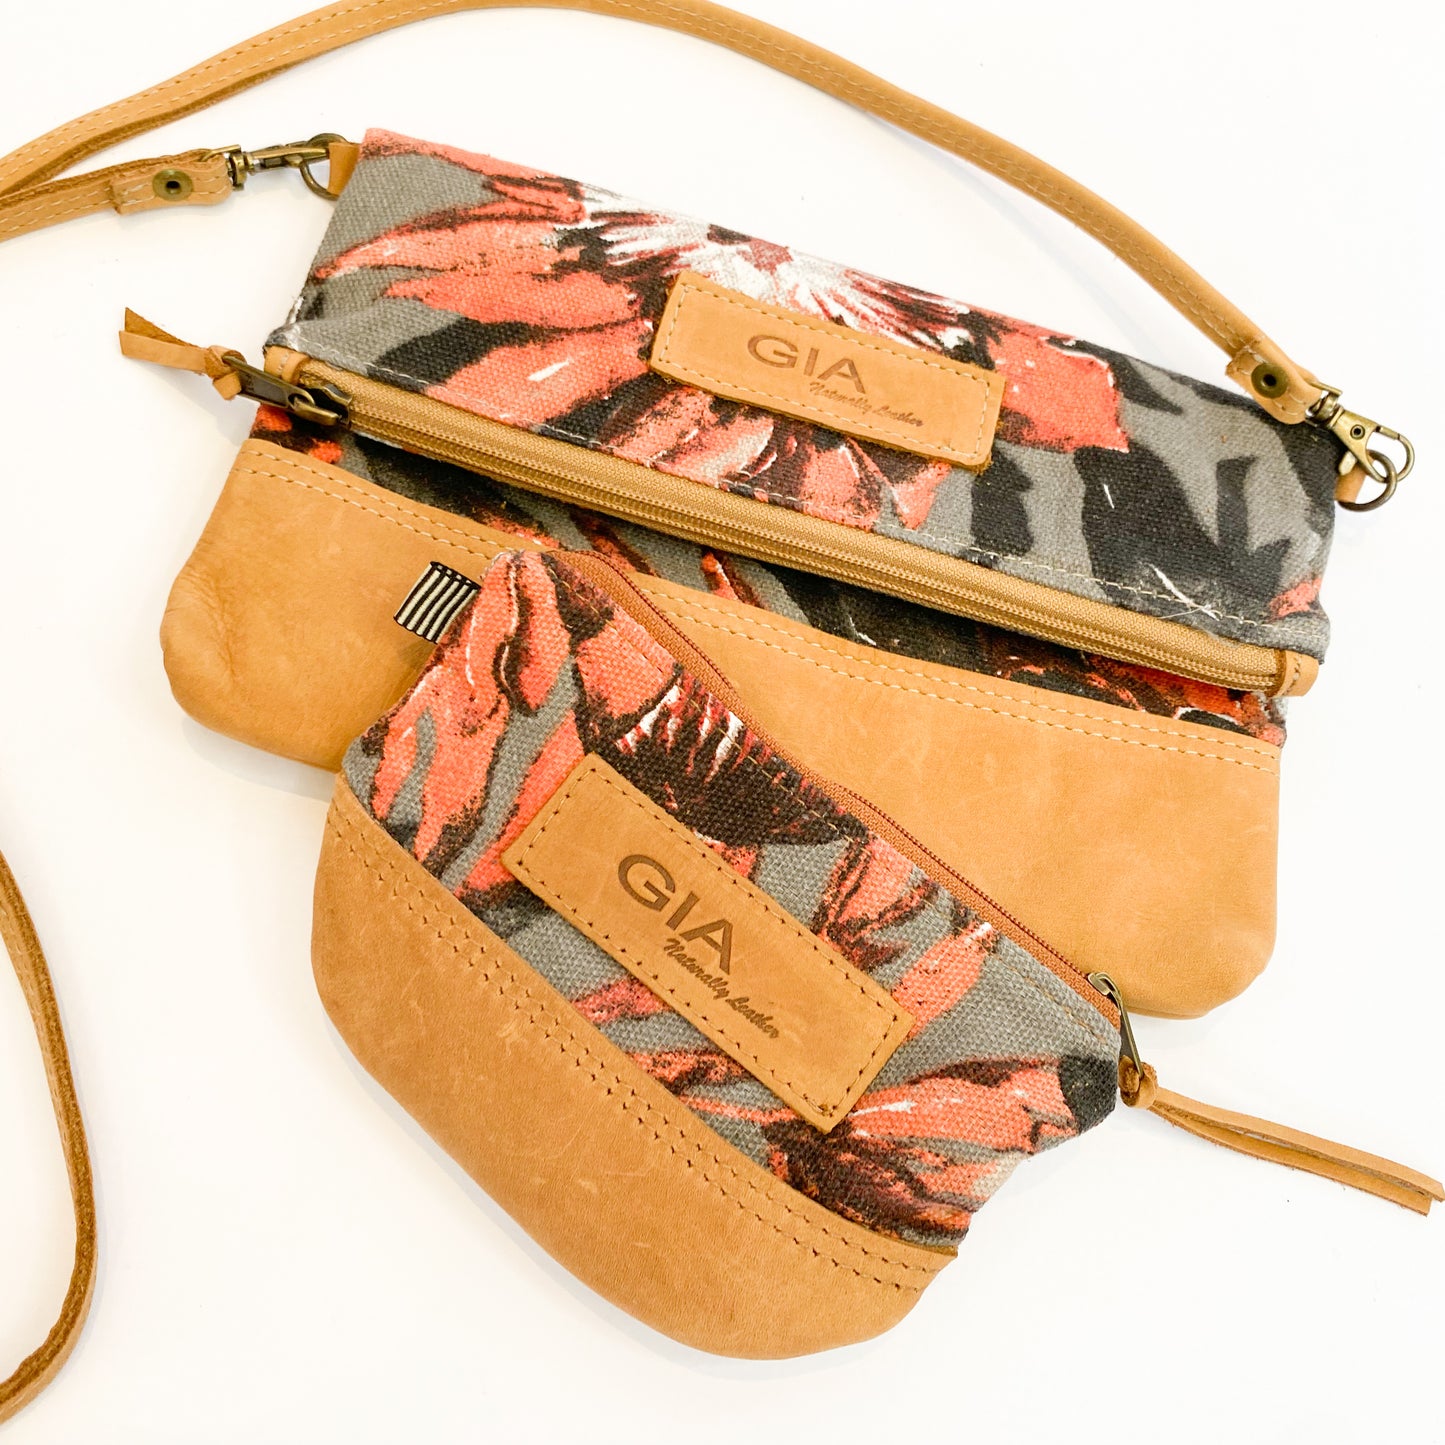 Gia leather and protea purse